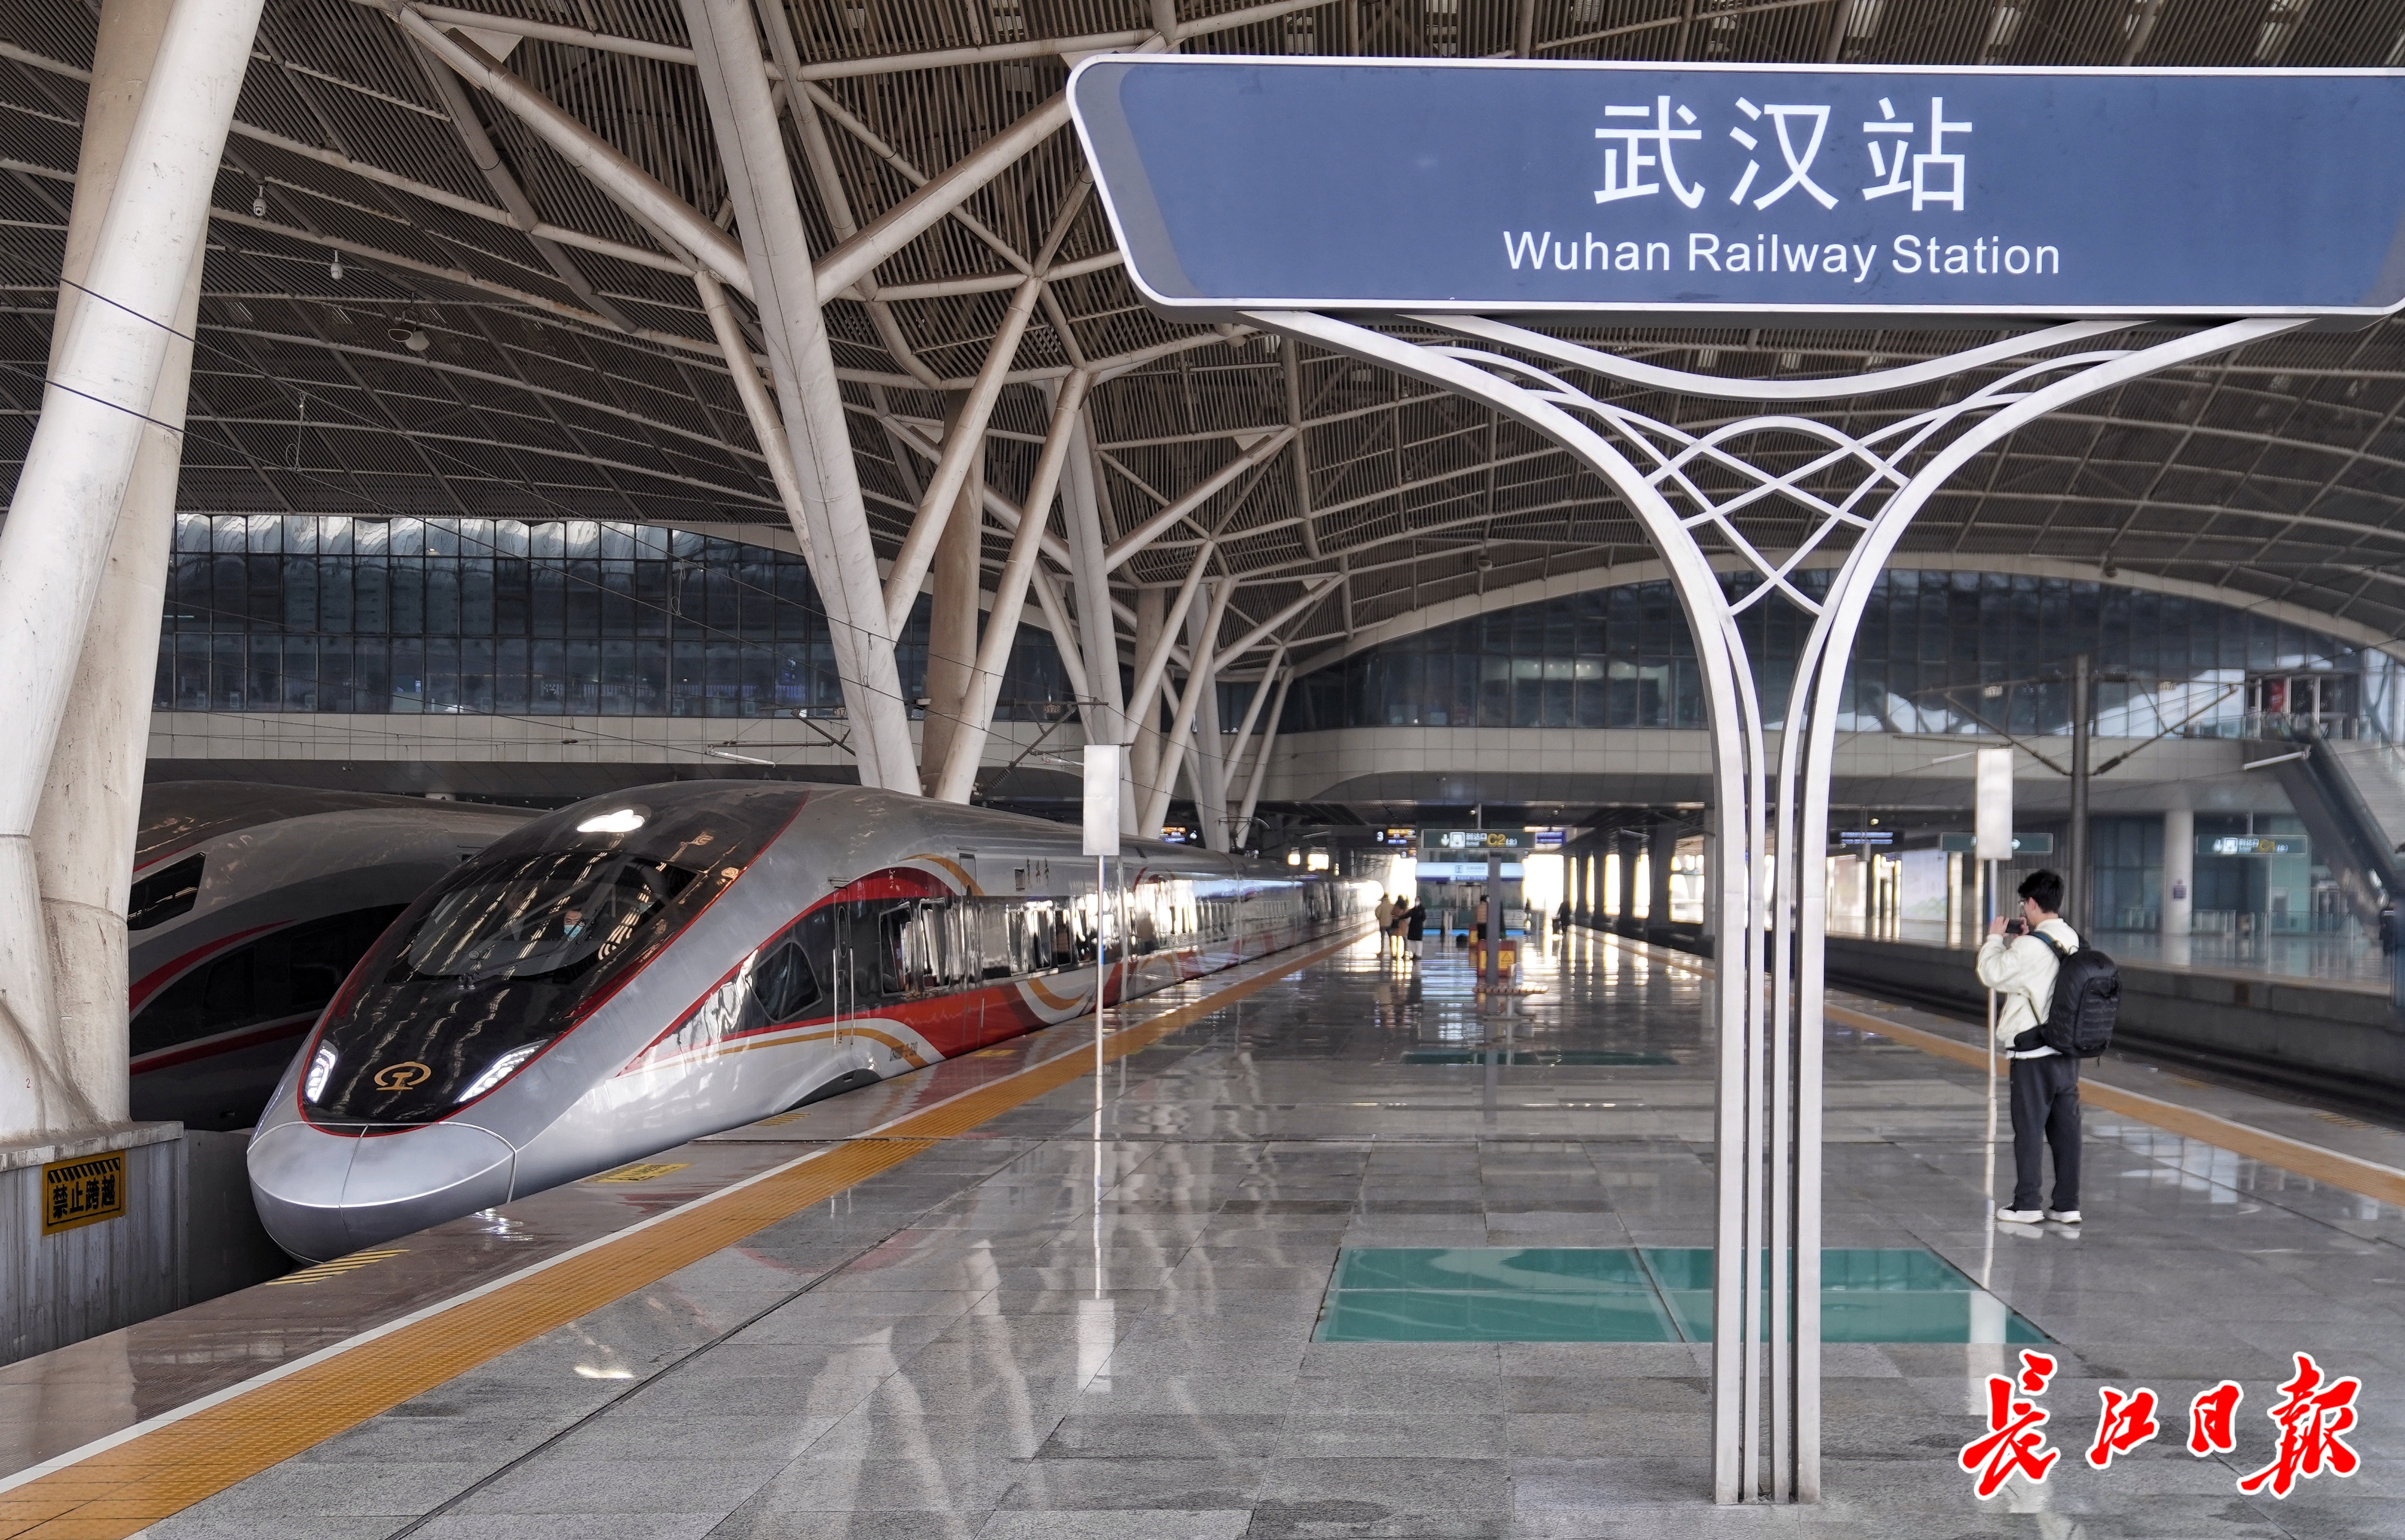 武汉至西宁迈入高铁直通时代 